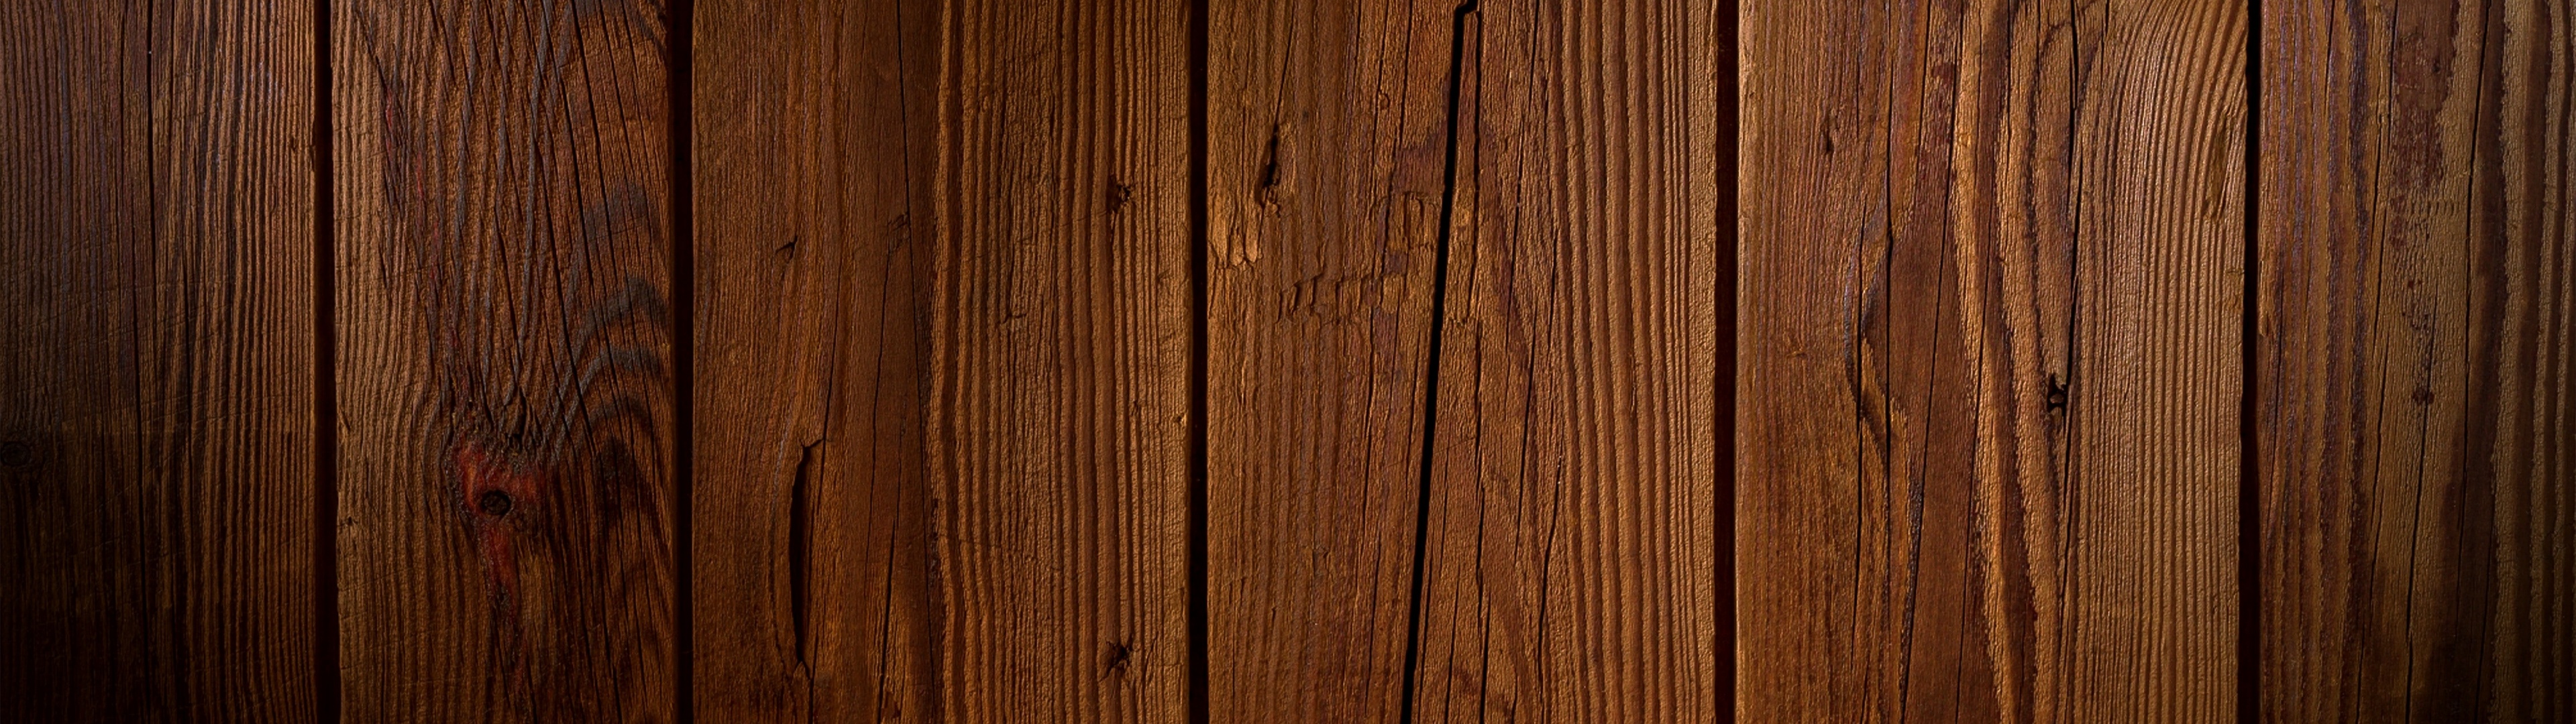 Nền gỗ - Một nền gỗ sẽ tạo nên sự ấm áp và gần gũi trong không gian của bạn. Hãy cùng chiêm ngưỡng hình ảnh nền gỗ đẹp và tìm hiểu cách sắp xếp nó để tăng thêm tính thẩm mỹ cho phòng của bạn.